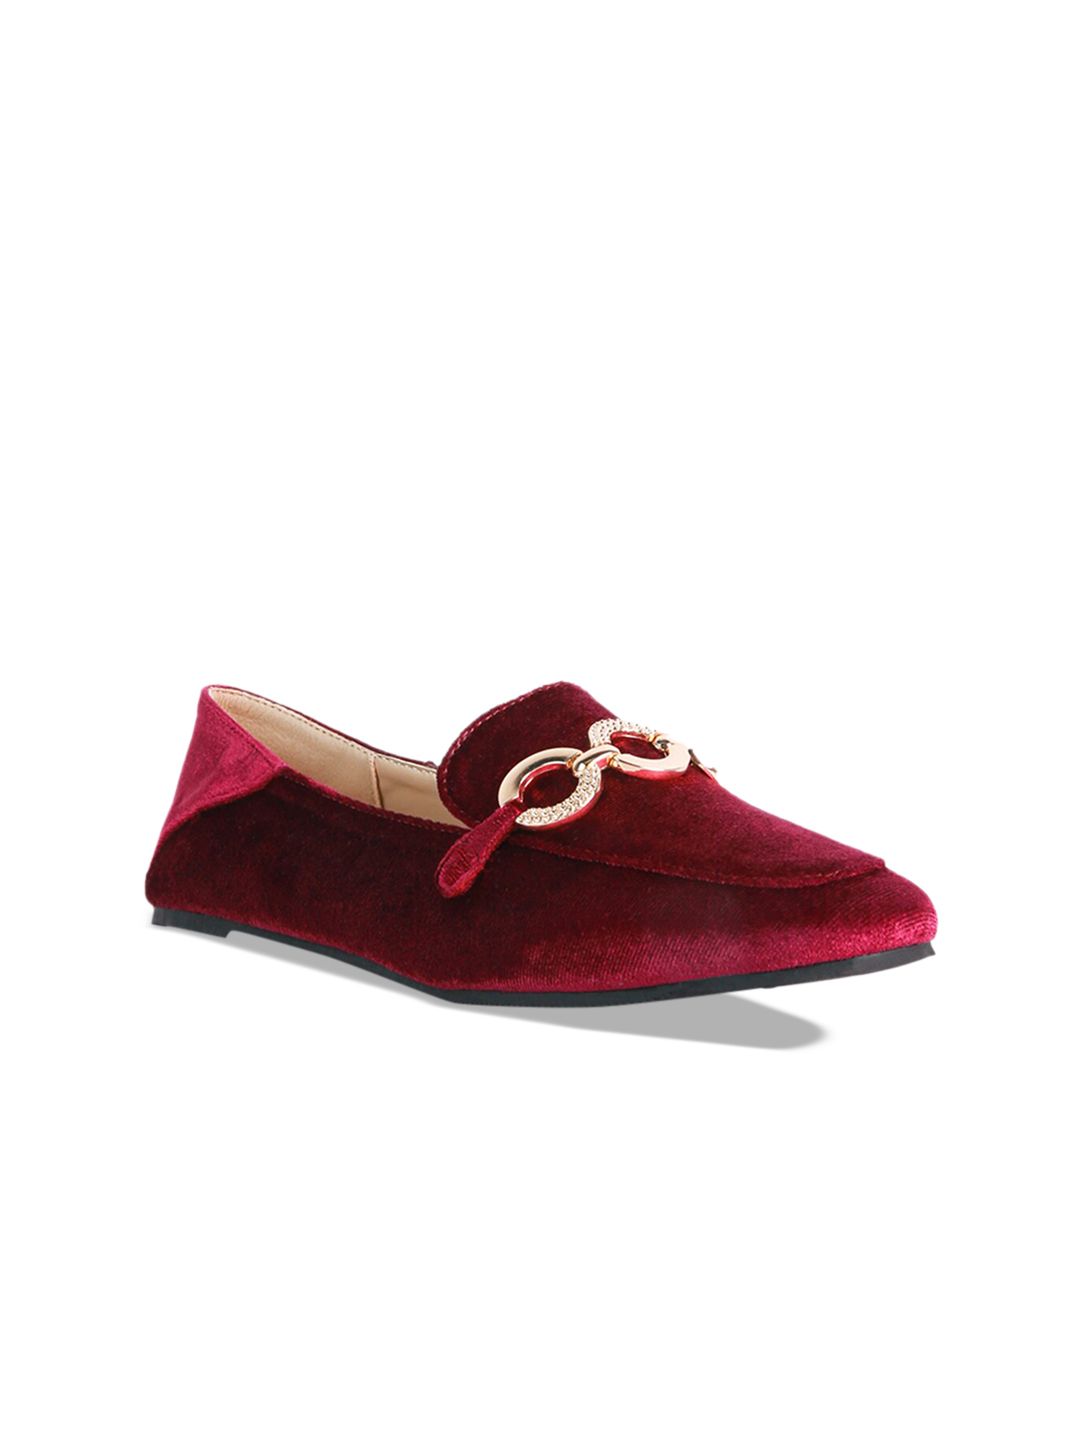 London Rag Women Red Woven Design Velvet Loafers Price in India